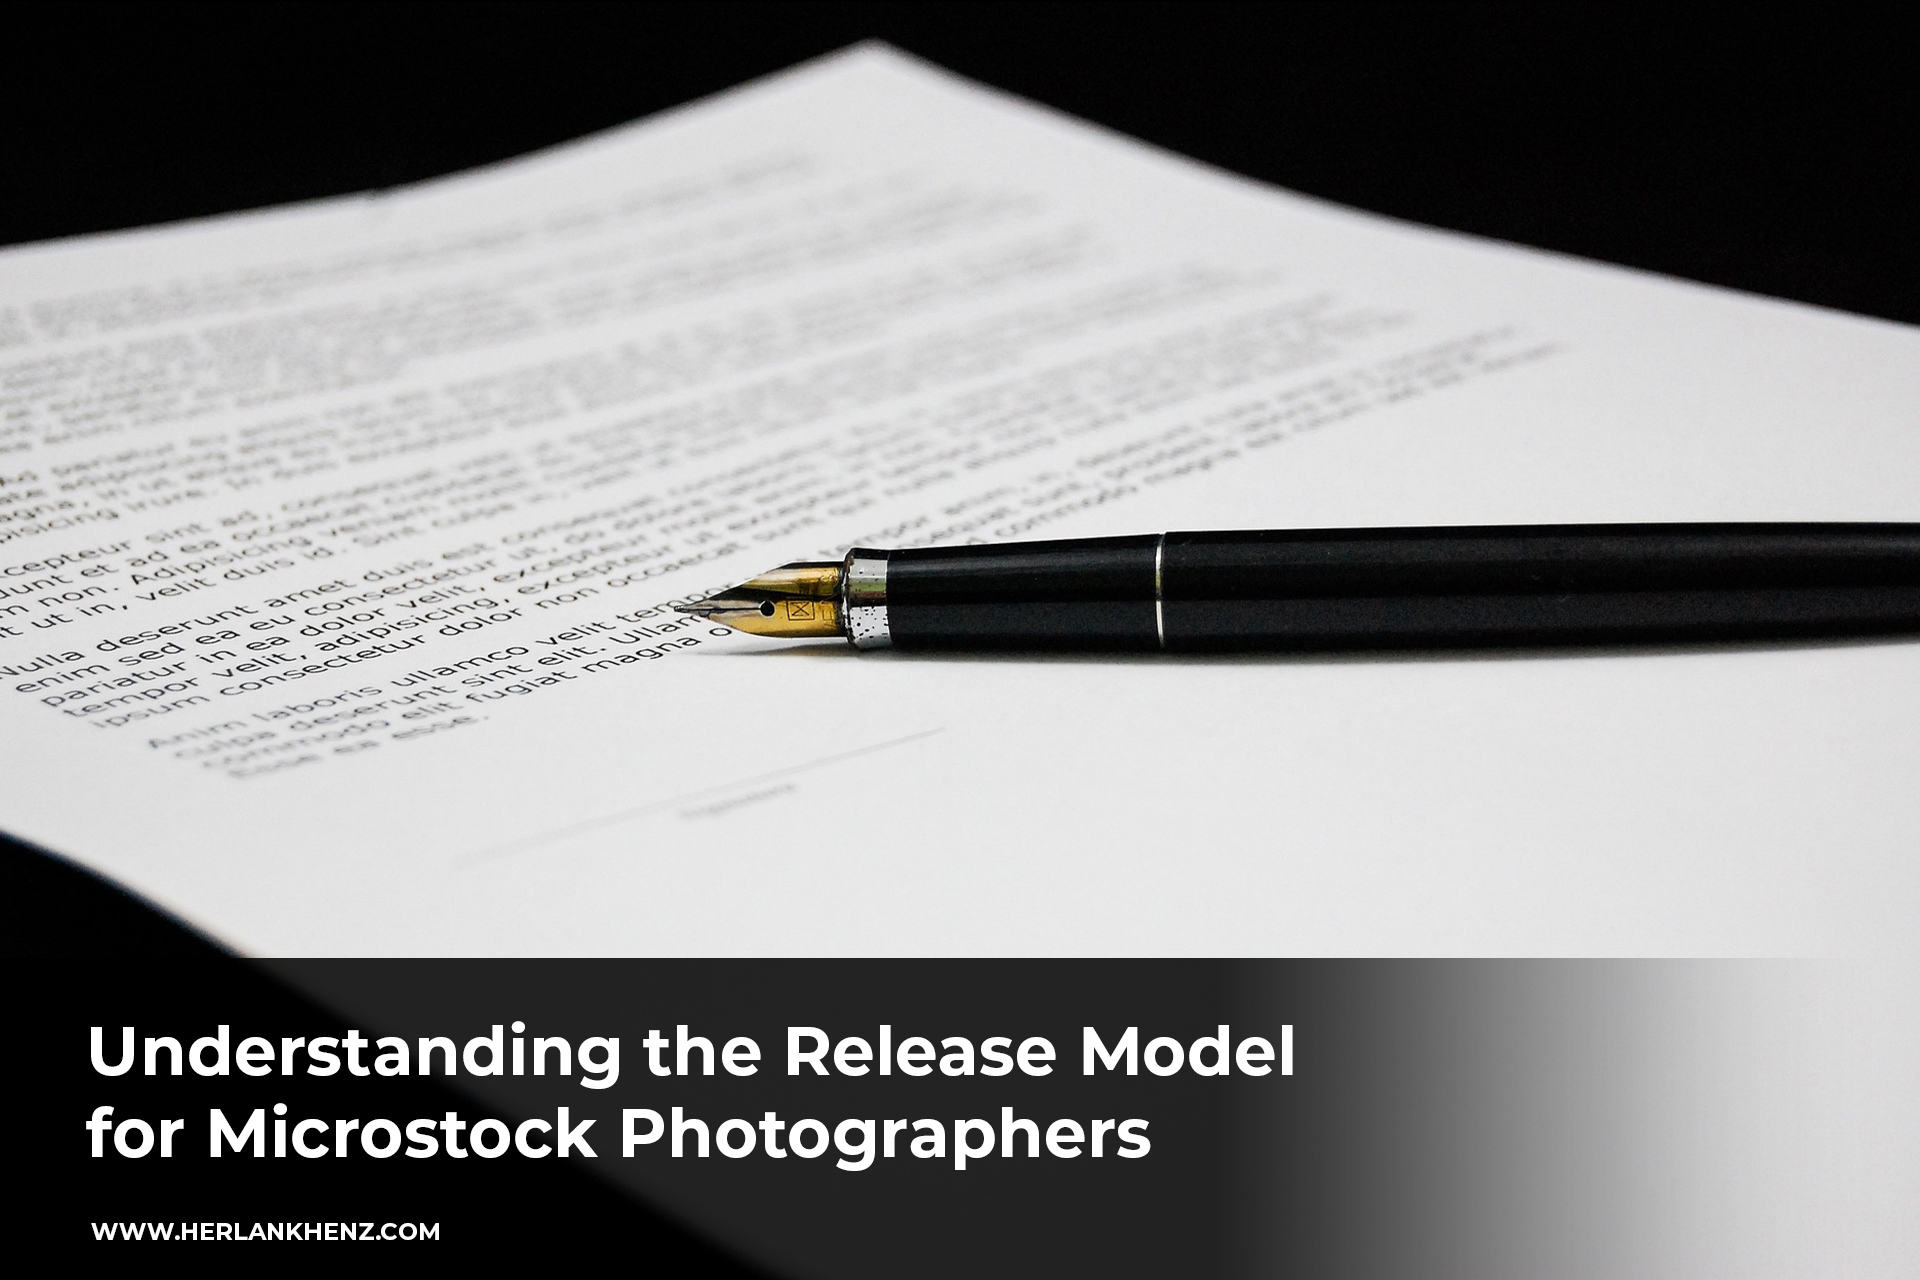 Memahami Model Release Untuk Fotografer Microstock